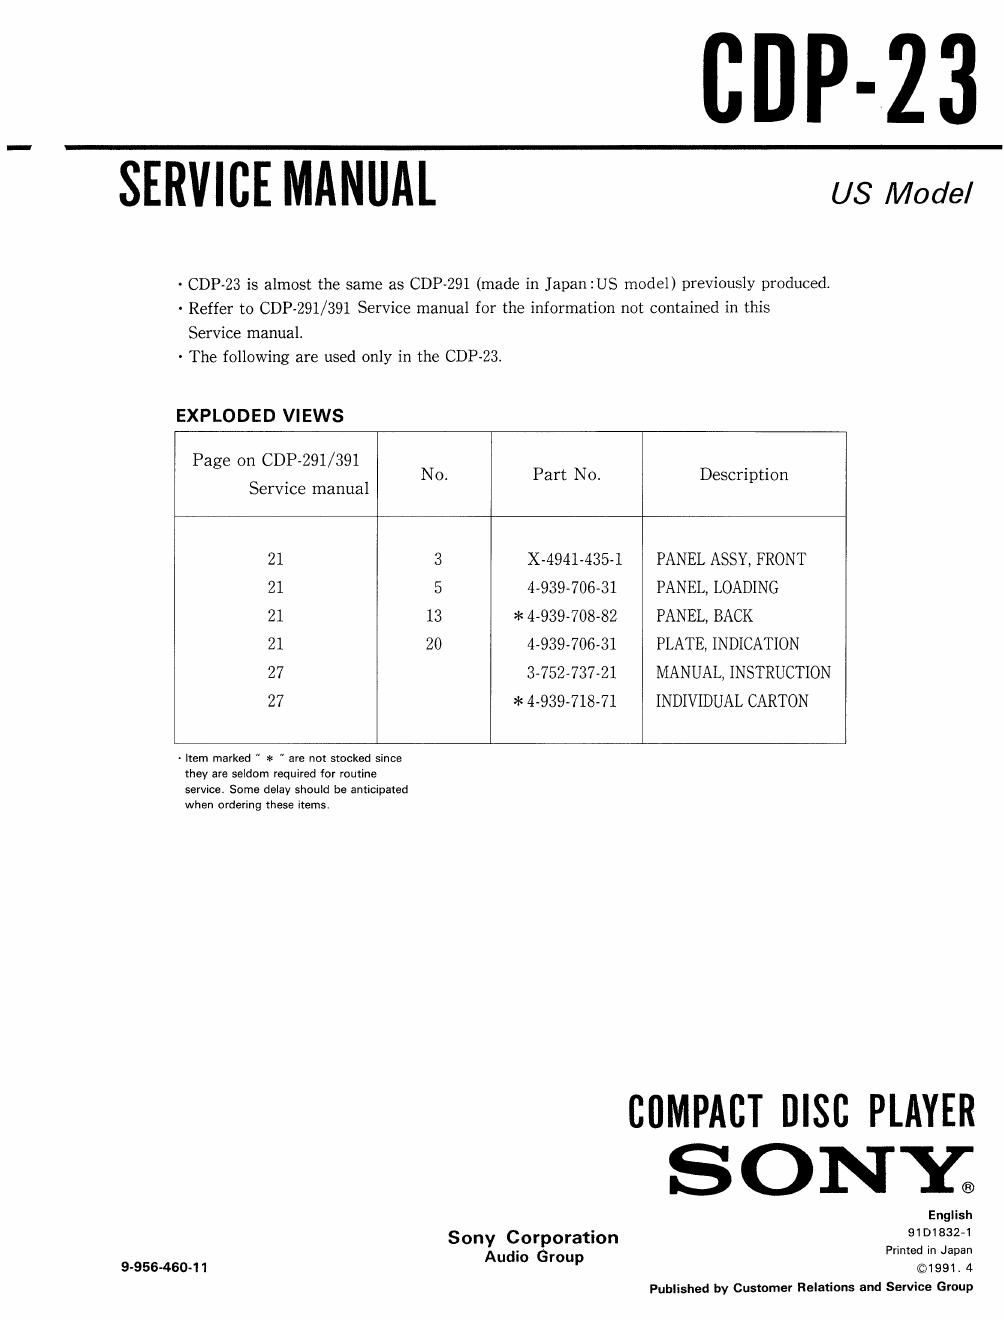 sony cdp 23 service manual